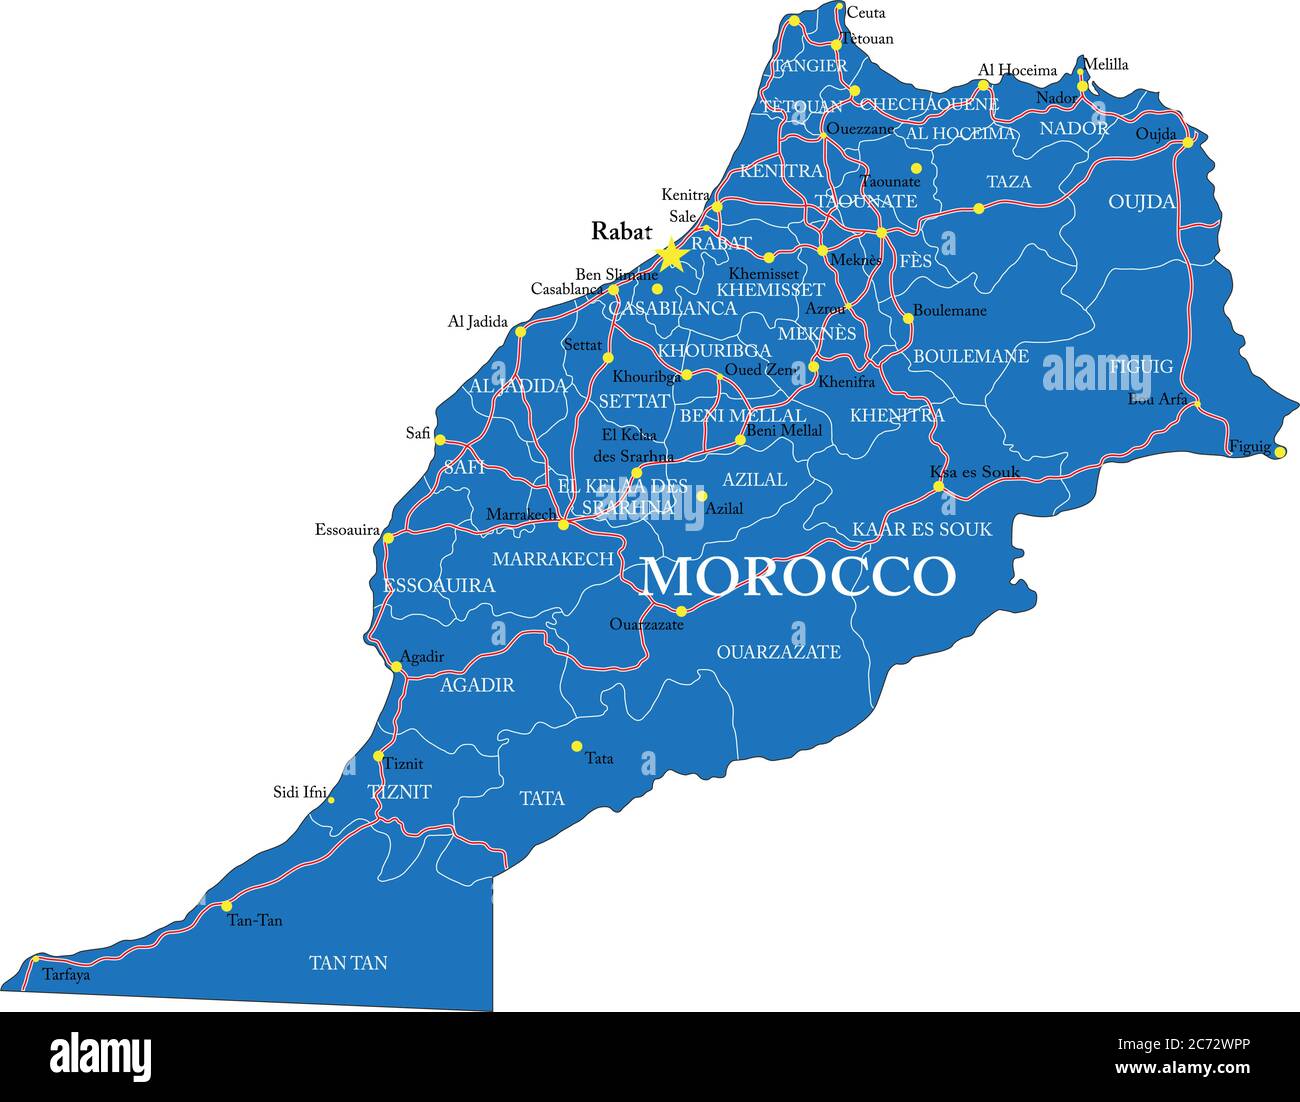 Mappa vettoriale del Marocco con regioni amministrative, città principali e strade. Illustrazione Vettoriale